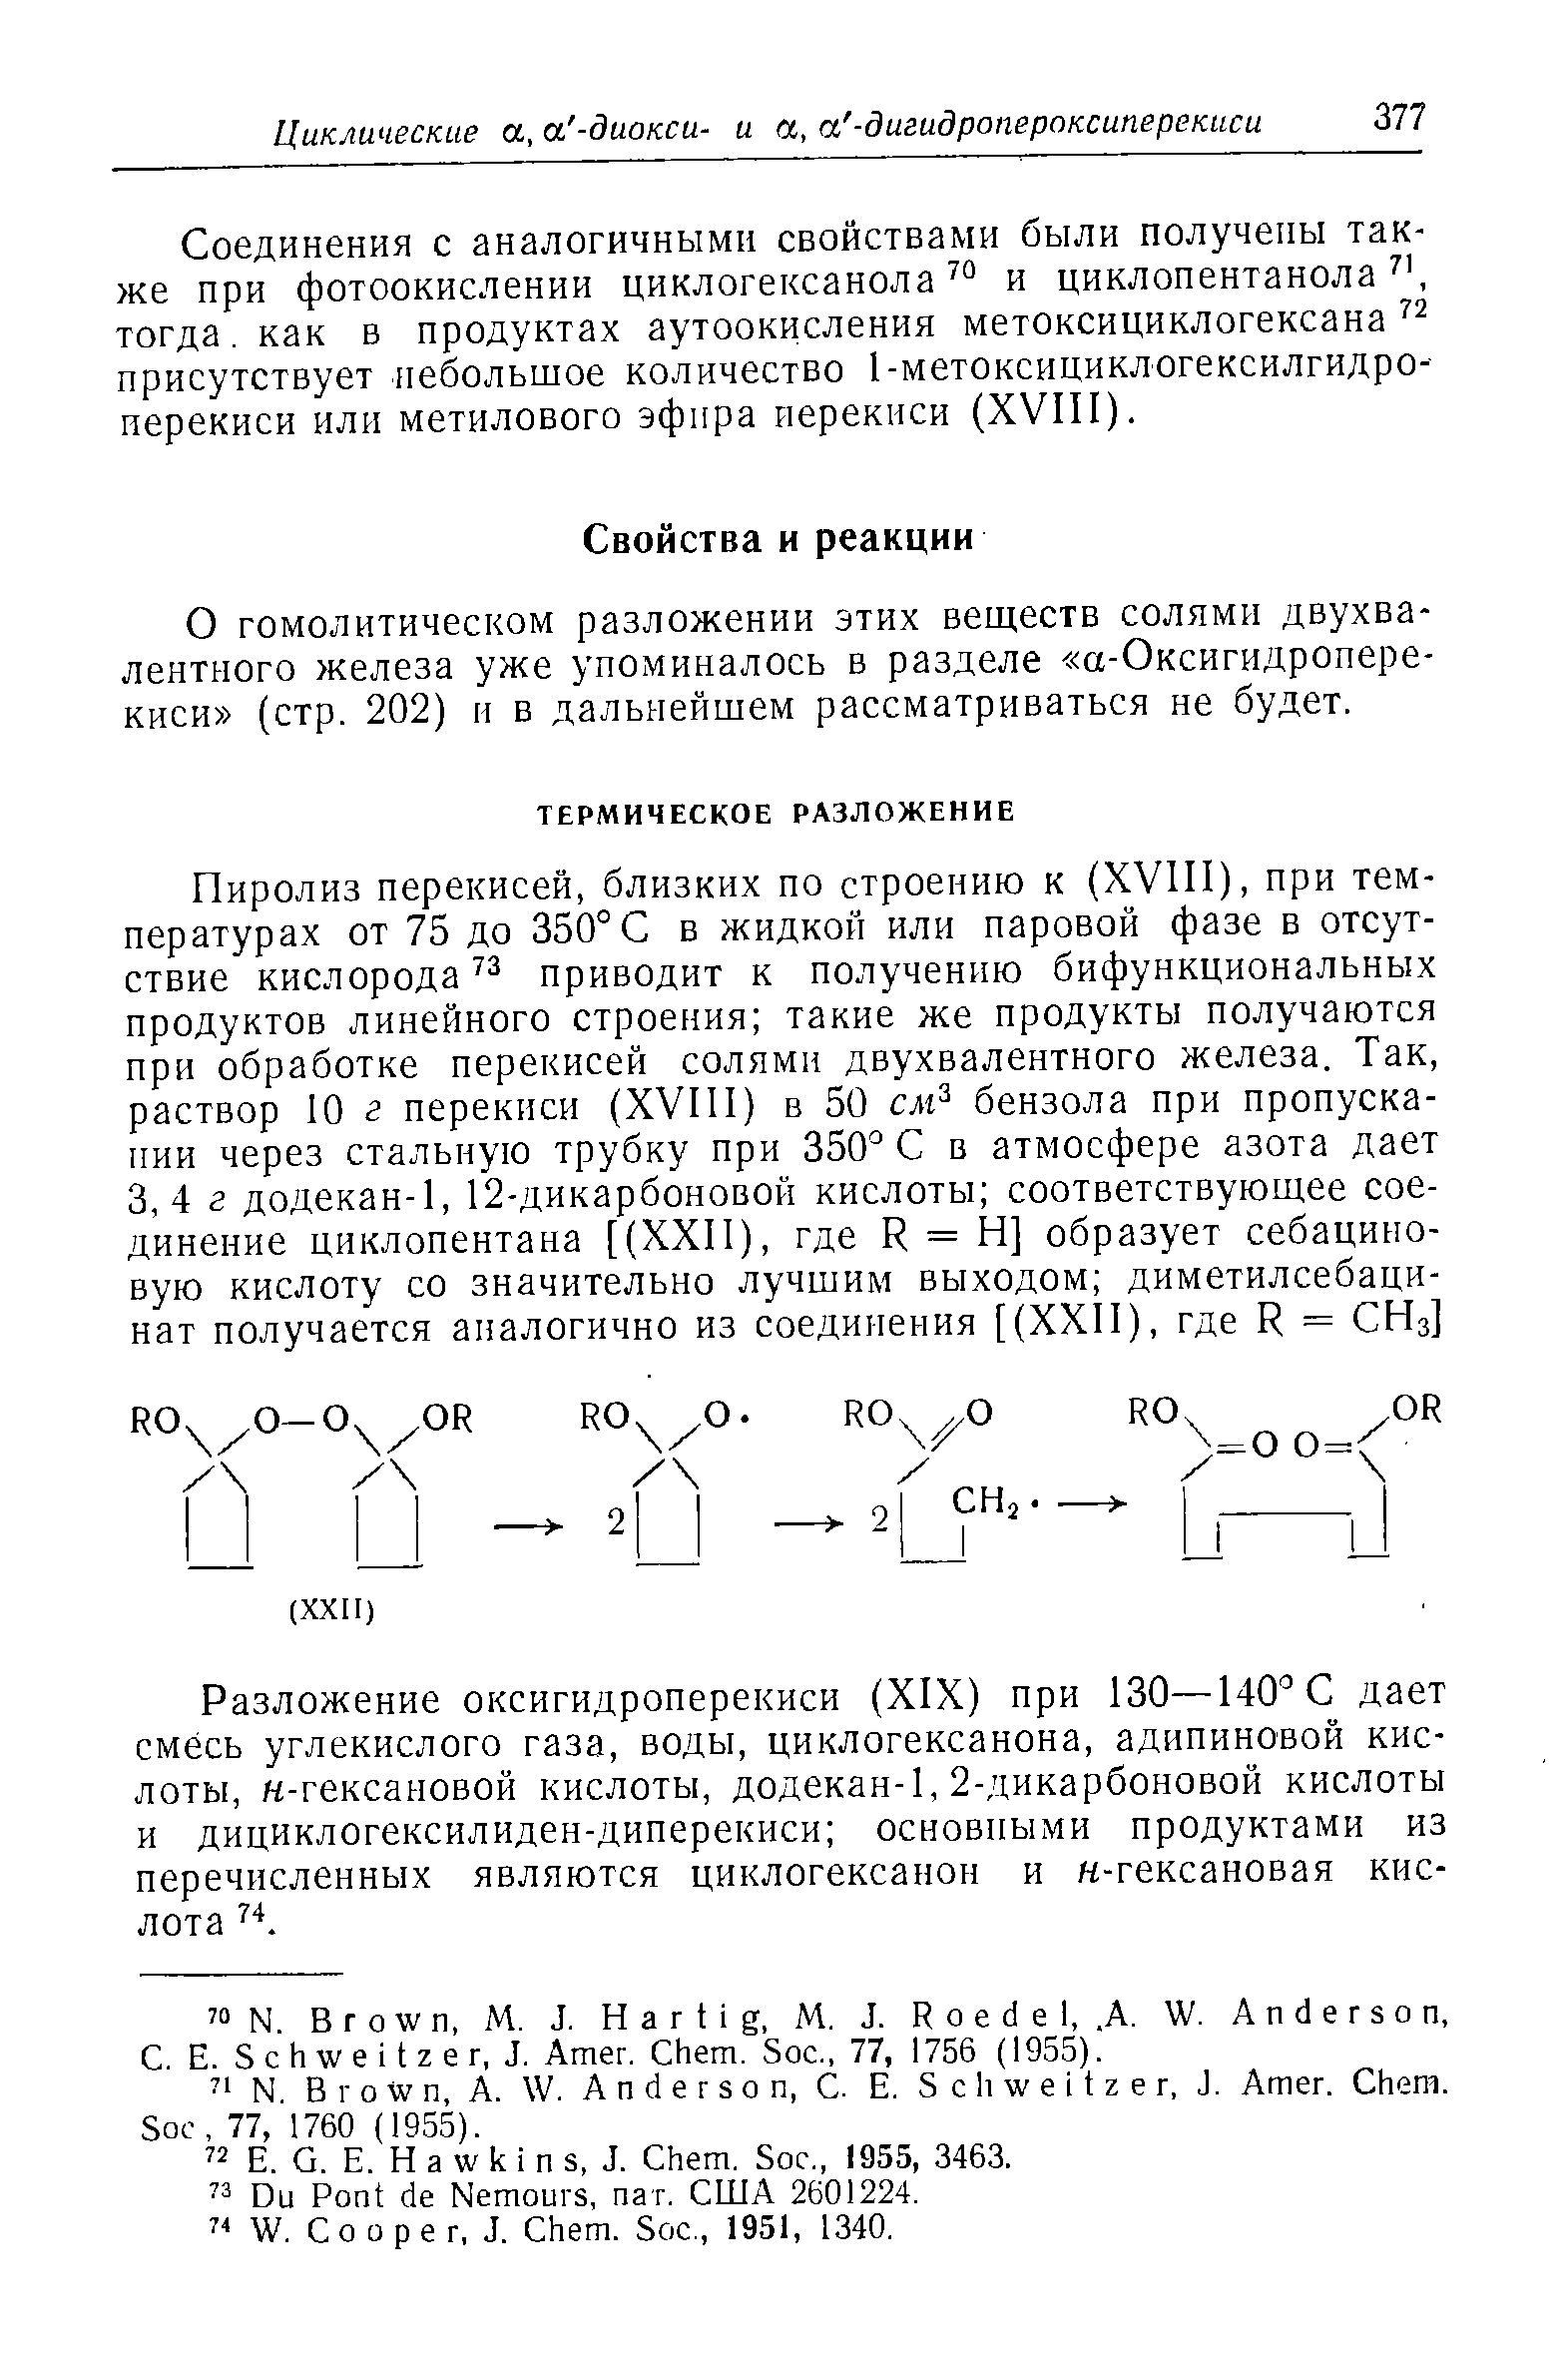 О гомолитическом разложении этих вешеств солями двухвалентного железа уже упоминалось в разделе а-Оксигидропере-киси (стр. 202) и в дальнейшем рассматриваться не будет.